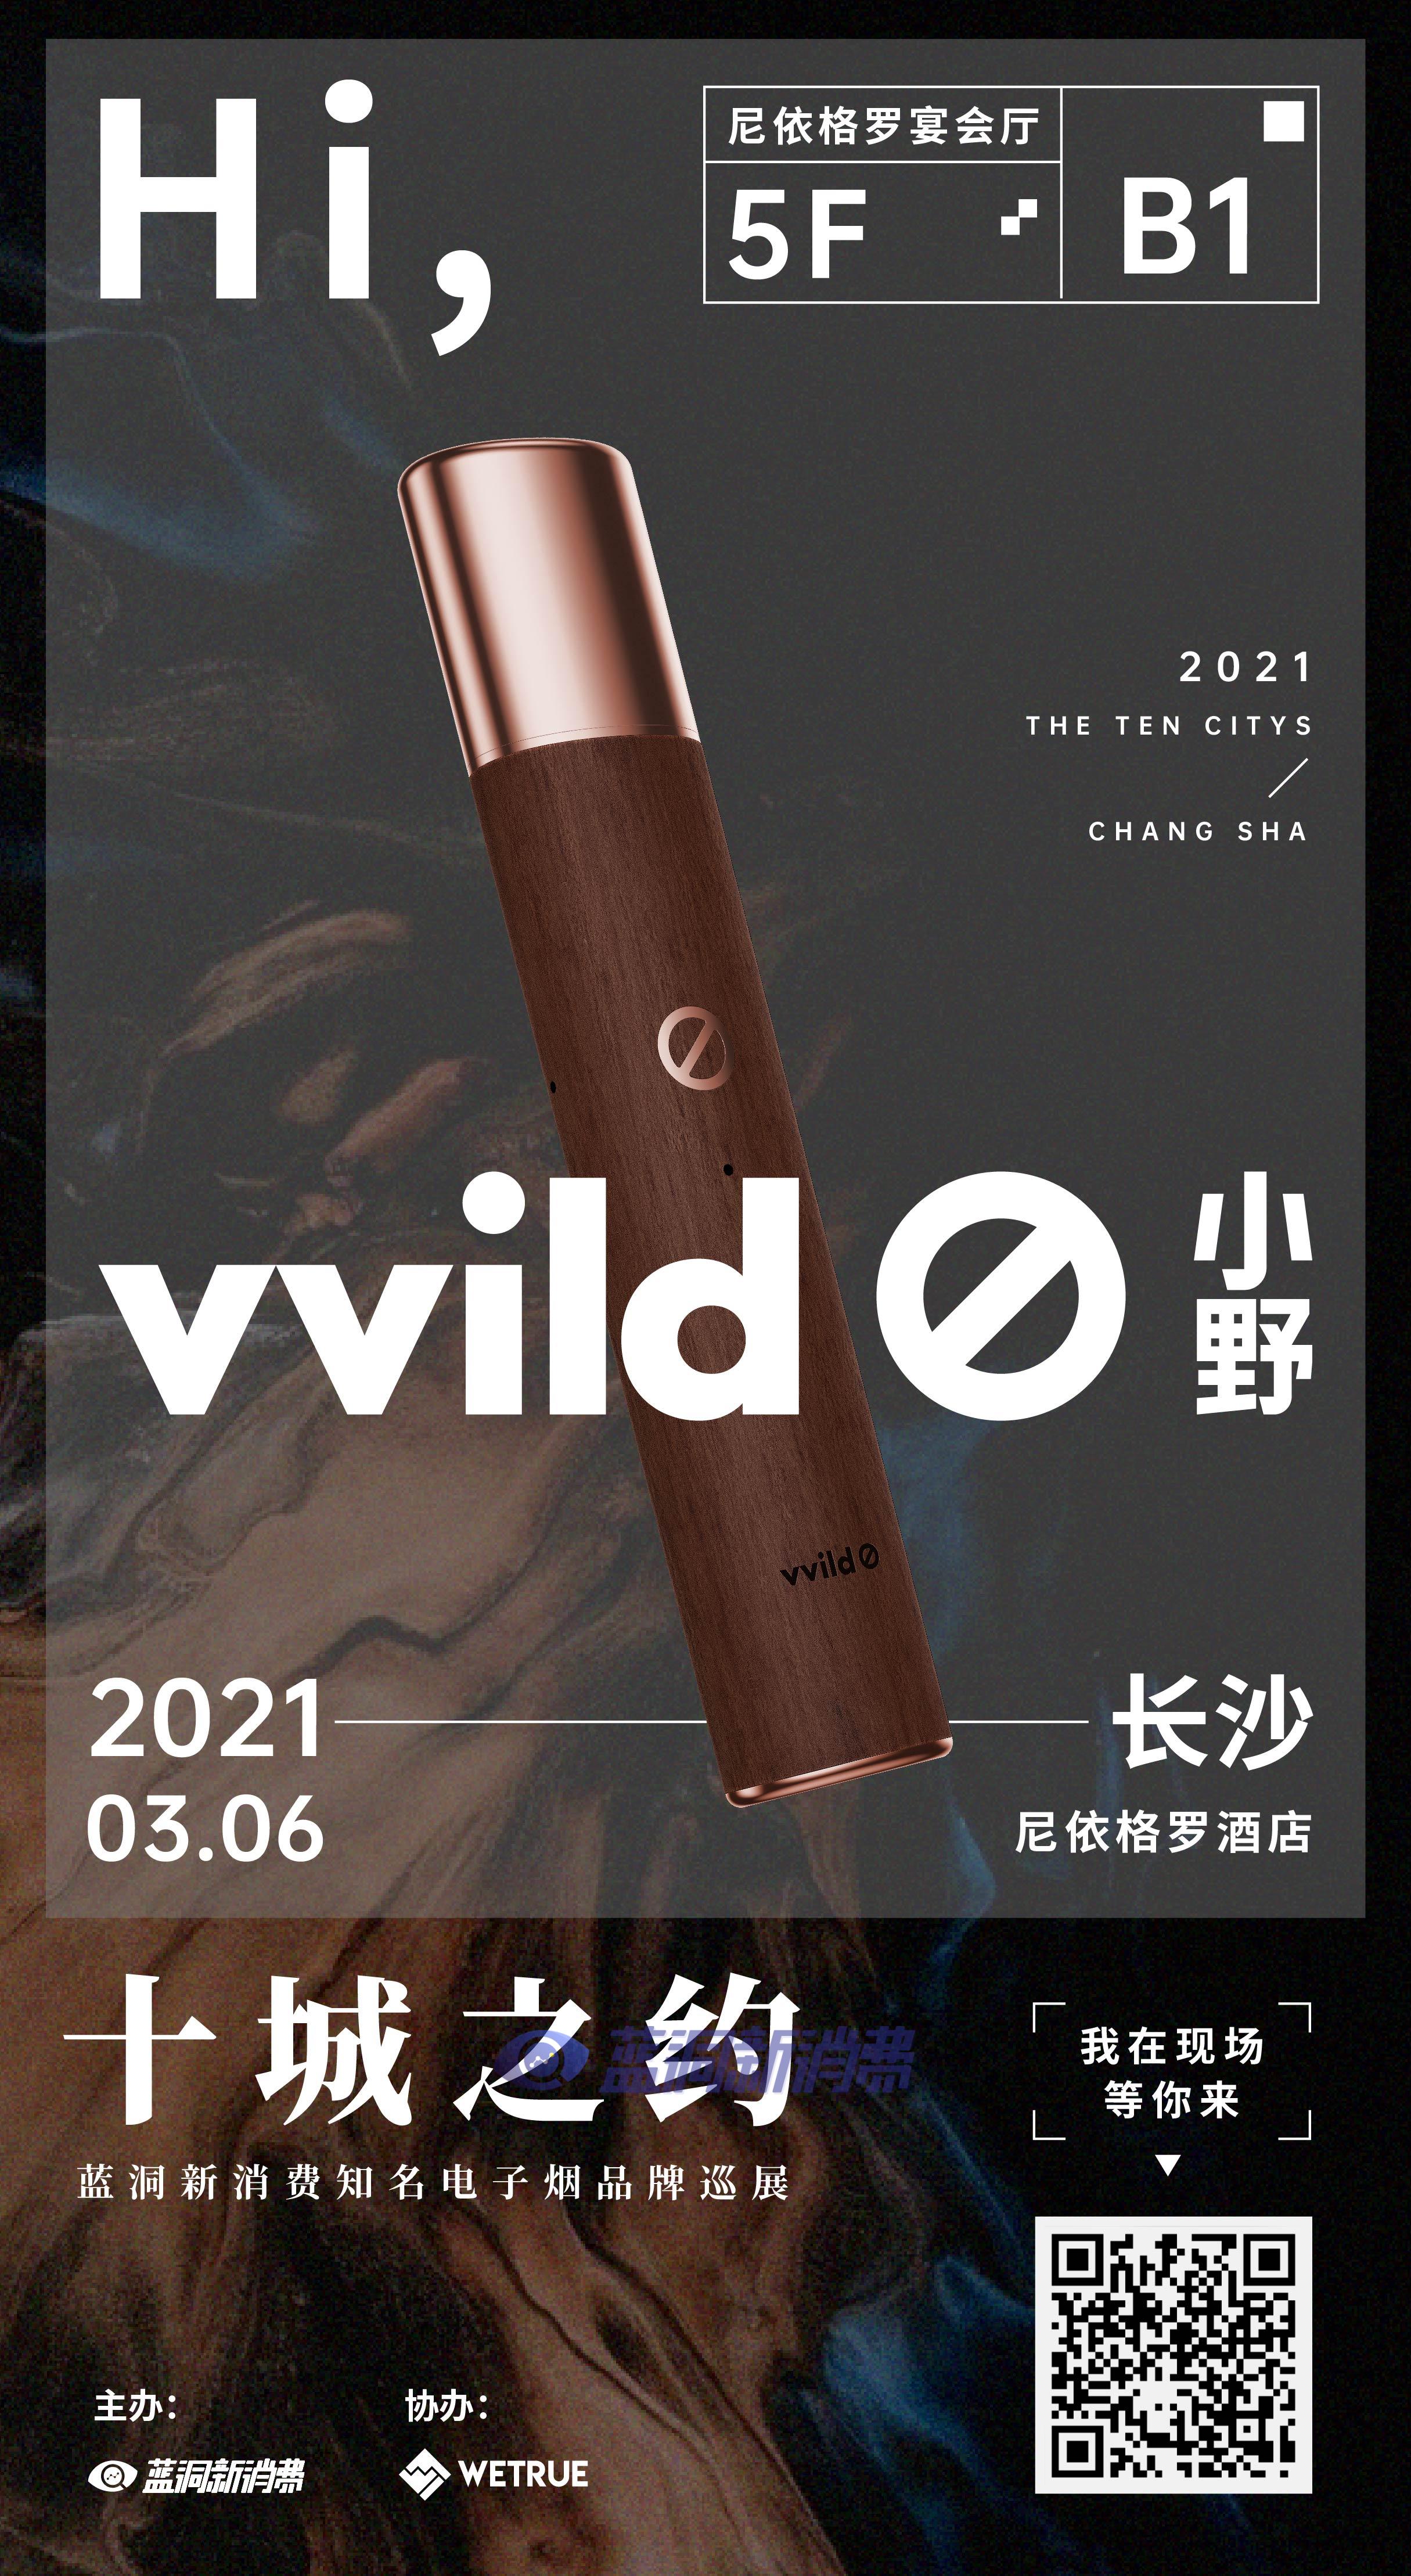 蓝洞电子烟巡展之长沙&成都站品牌巡礼:vvild小野电子烟